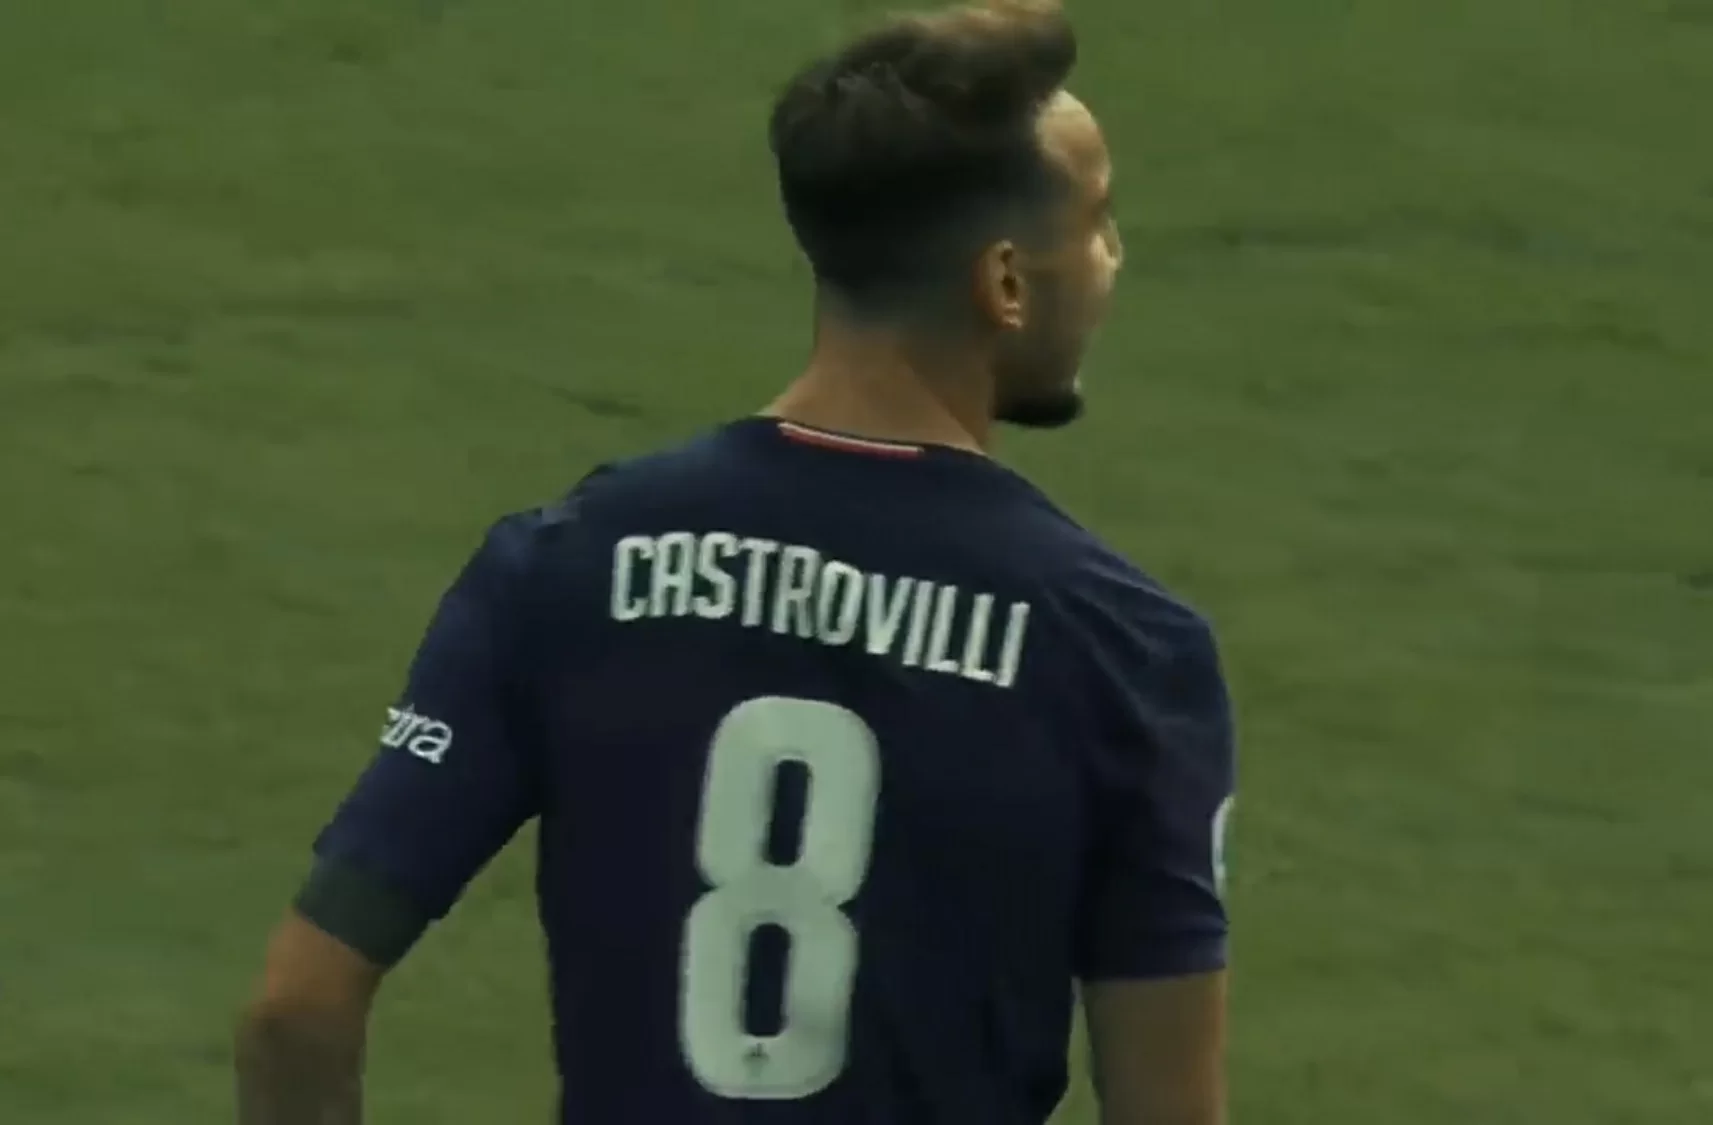 Juve-Fiorentina: Castrovilli all’allenamento per caricare i suoi compagni